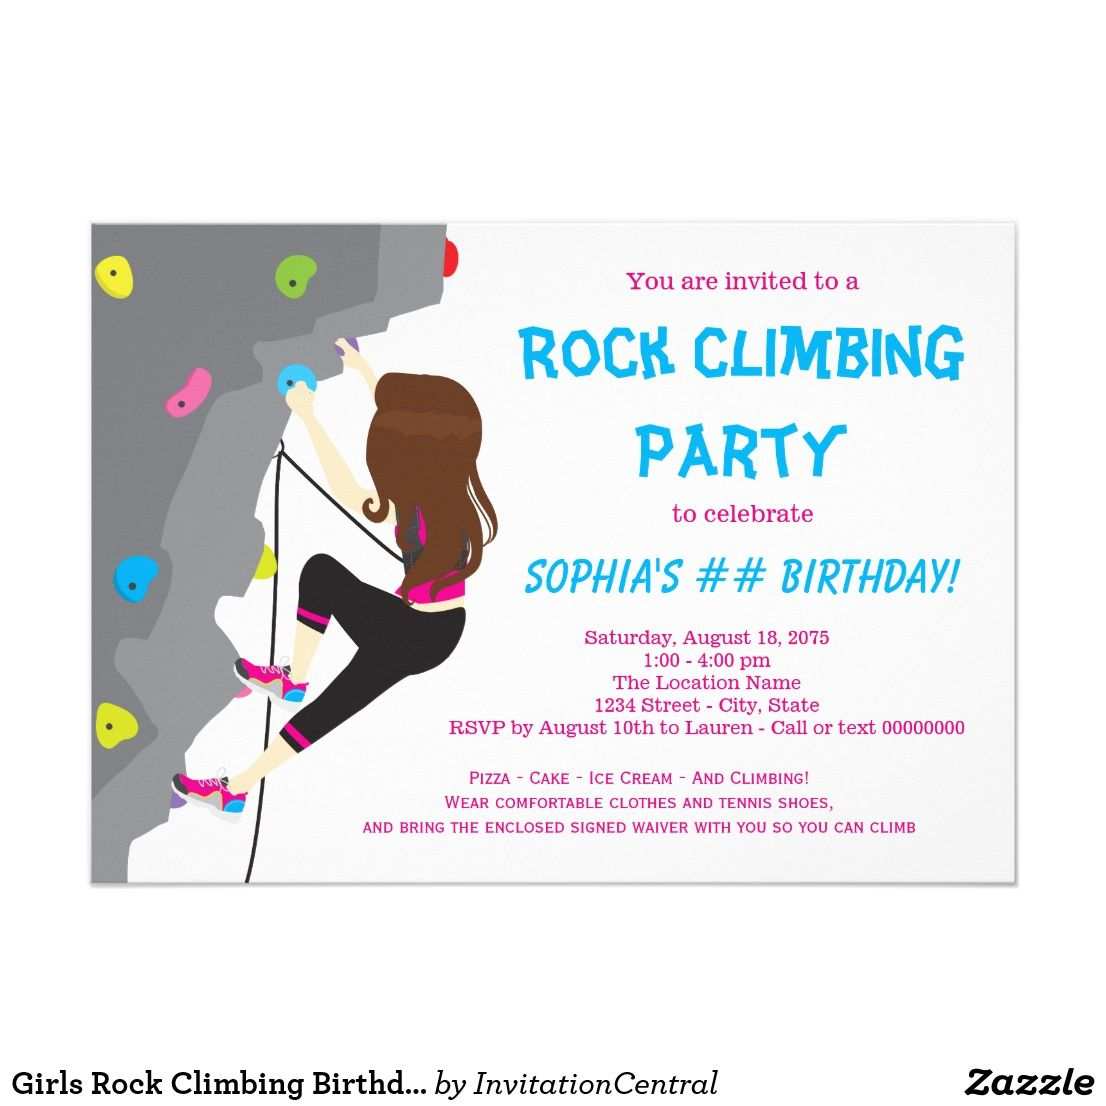 Madchen Felsen Kletterngeburtstags Party Einladung Zazzle De